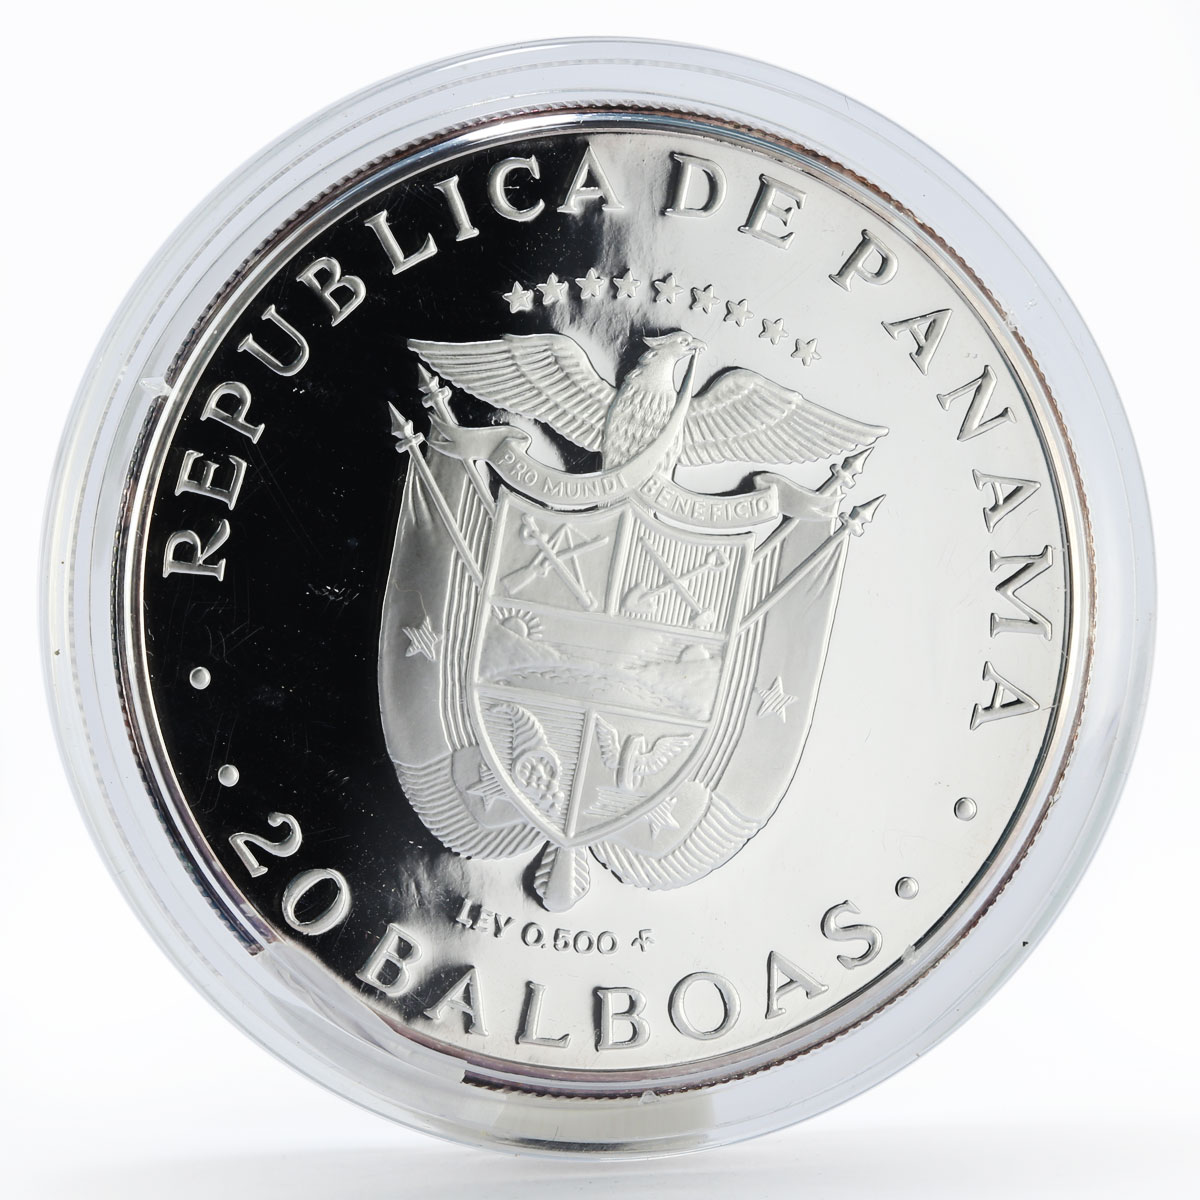 Panama 20 balboas De Simon Bolivar silver coin 1983